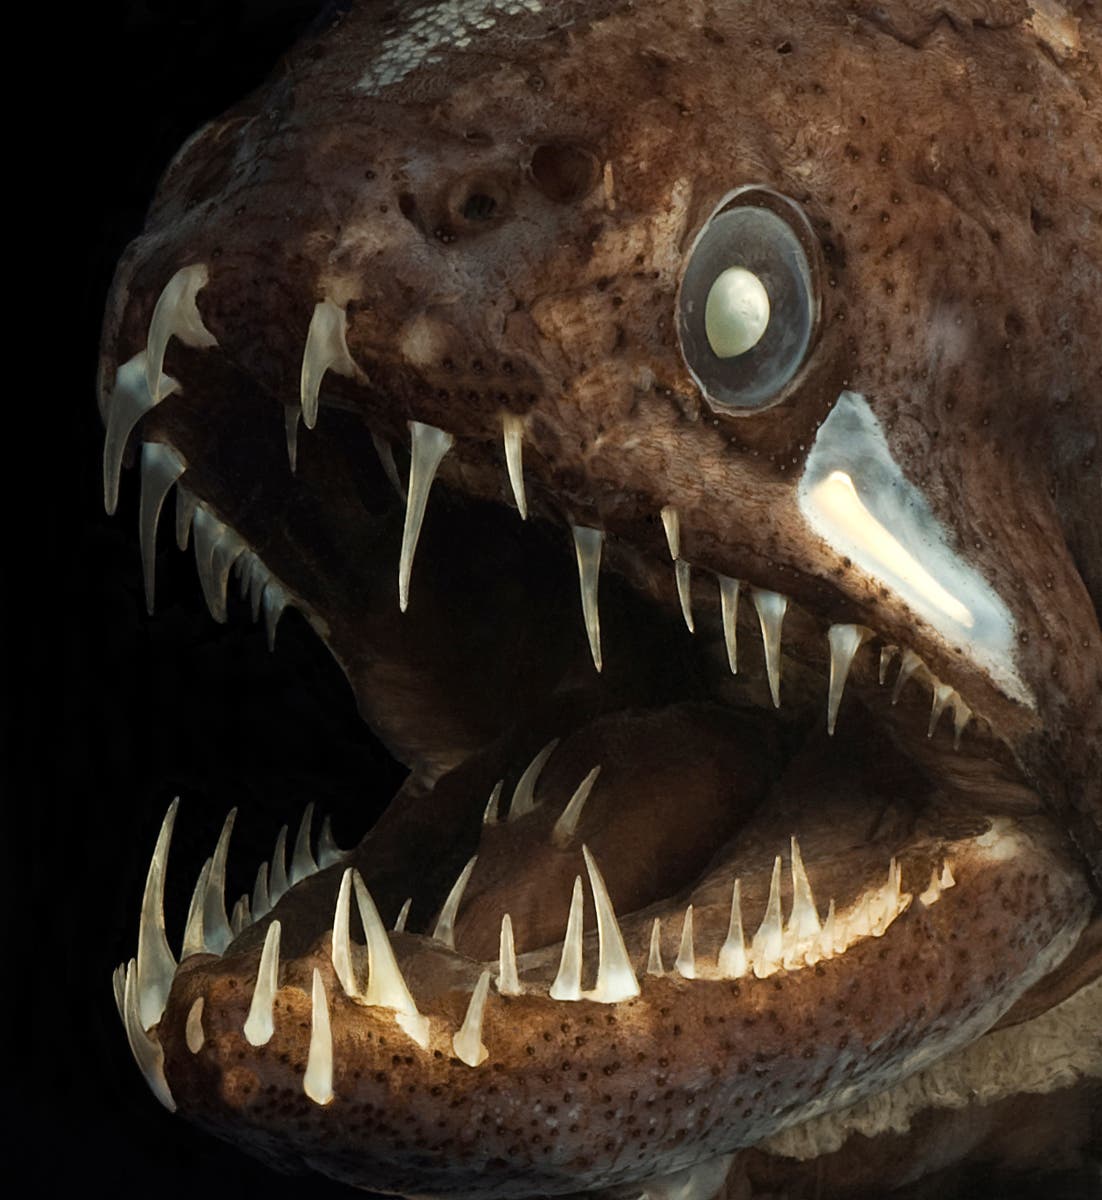 Drachenfische tragen sogar auf der Zunge Zähne